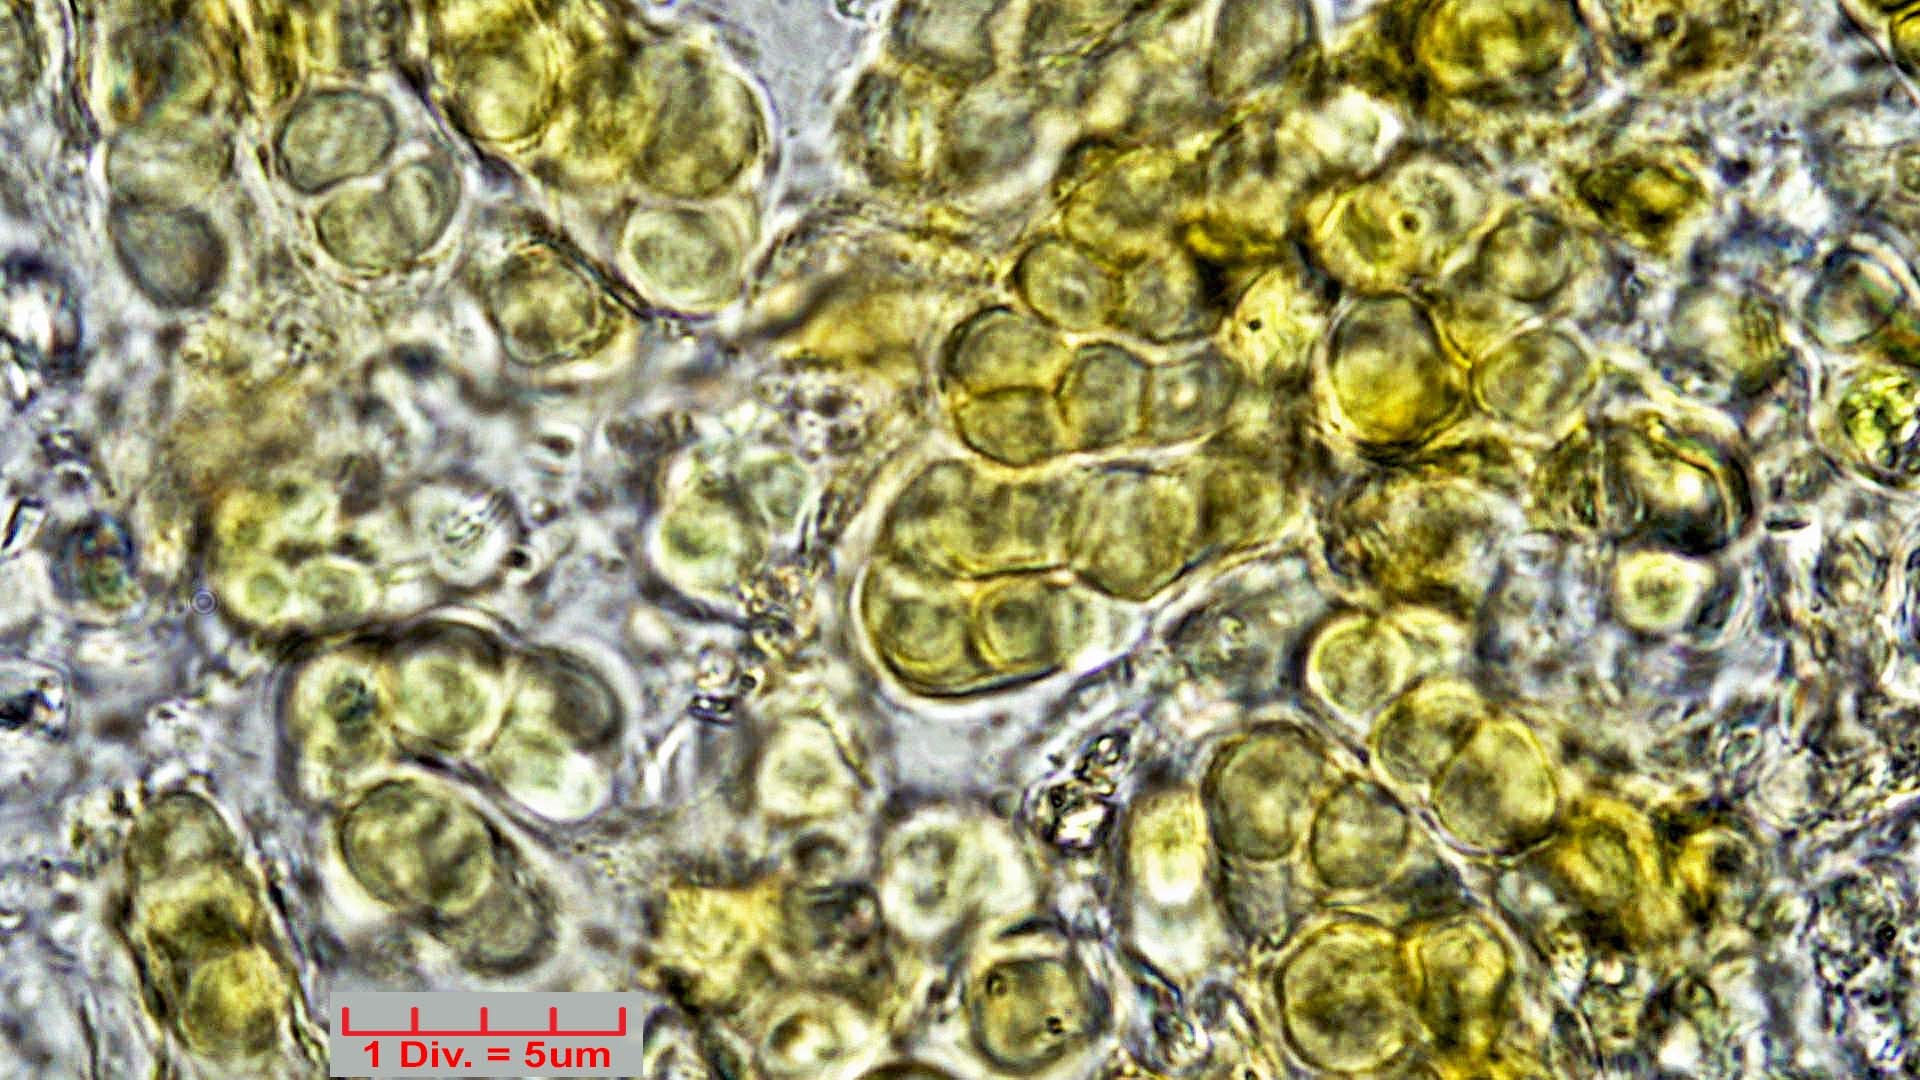 ././Cyanobacteria/Pleurocapsales/Hyellaceae/Pleurocapsa/fuliginosa/pleurocapsa-fuliginosa-163.jpg